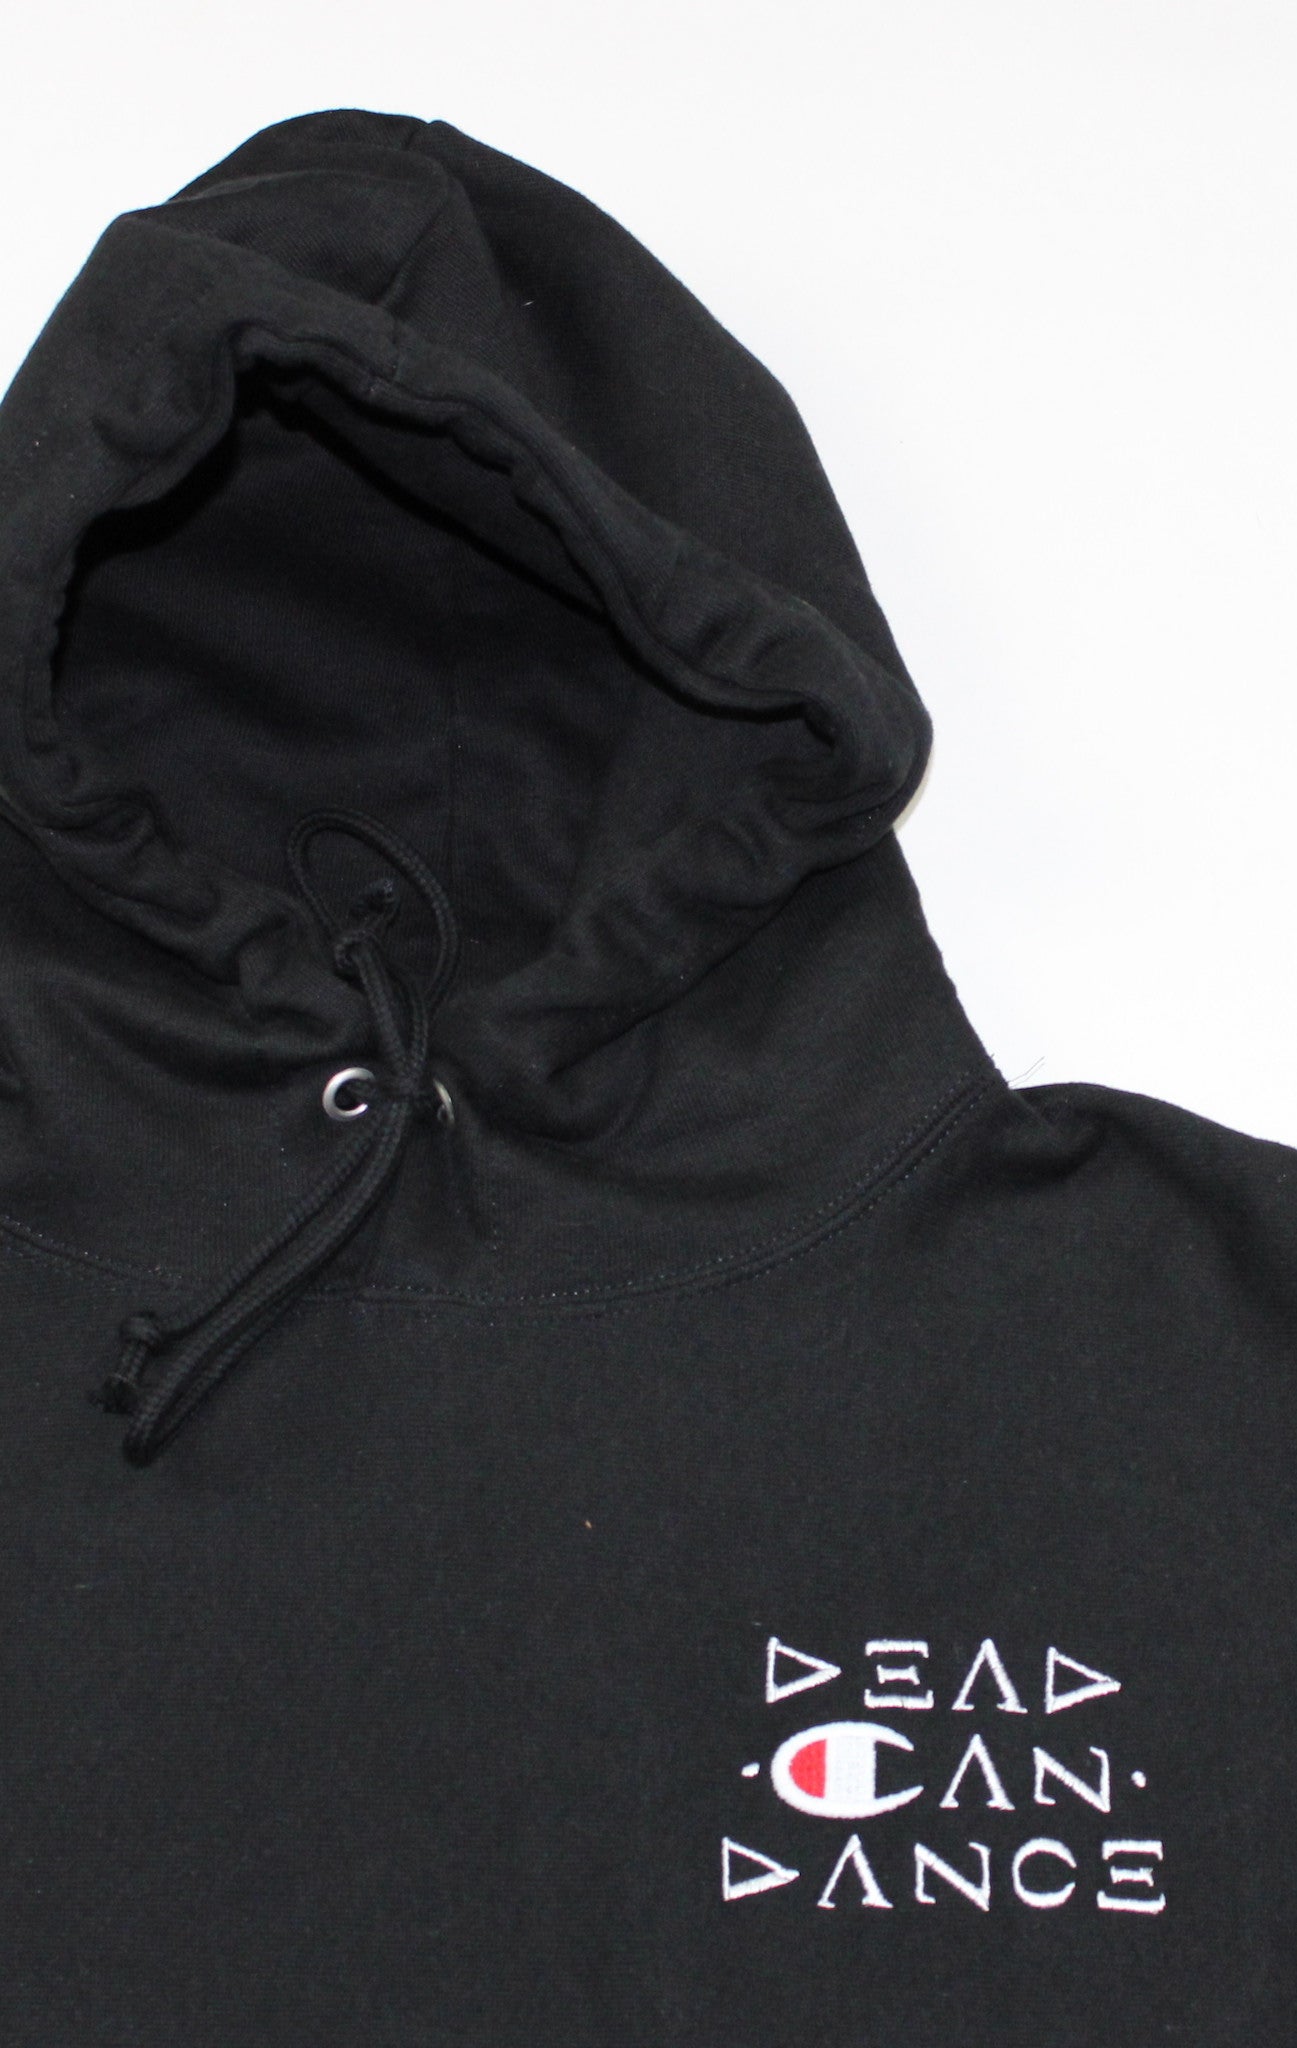 Dead Can Dance Reverse Weave hooded sweatshirt